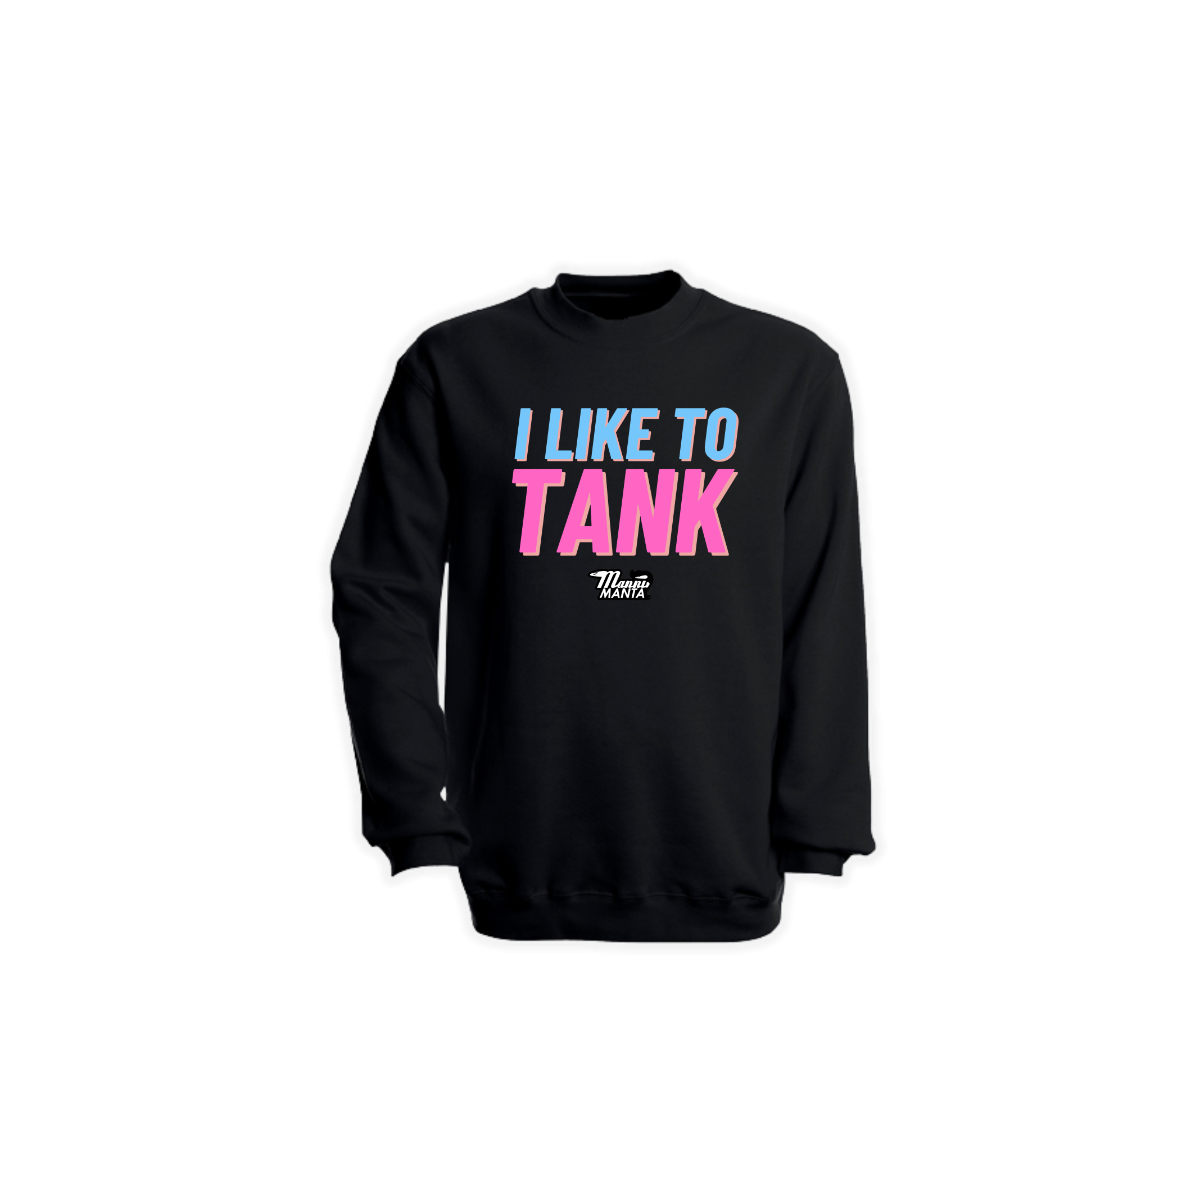 Sweat-Shirt "I LIKE TO TANK" schwarz